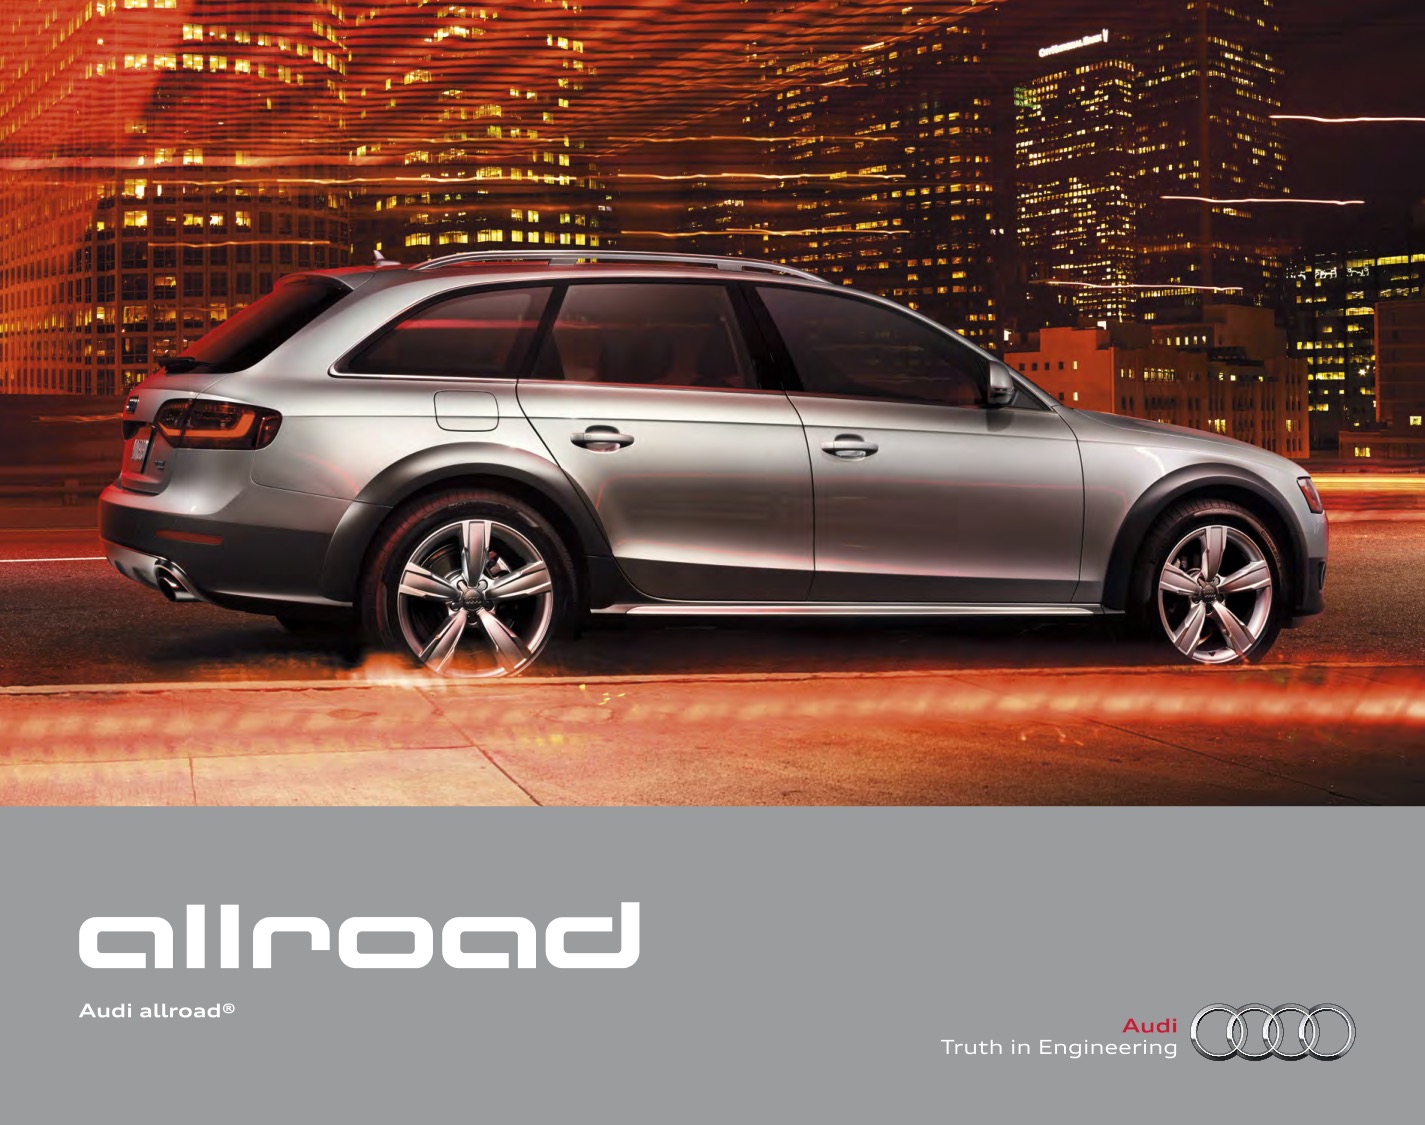 2015 Audi Allroad Brochure